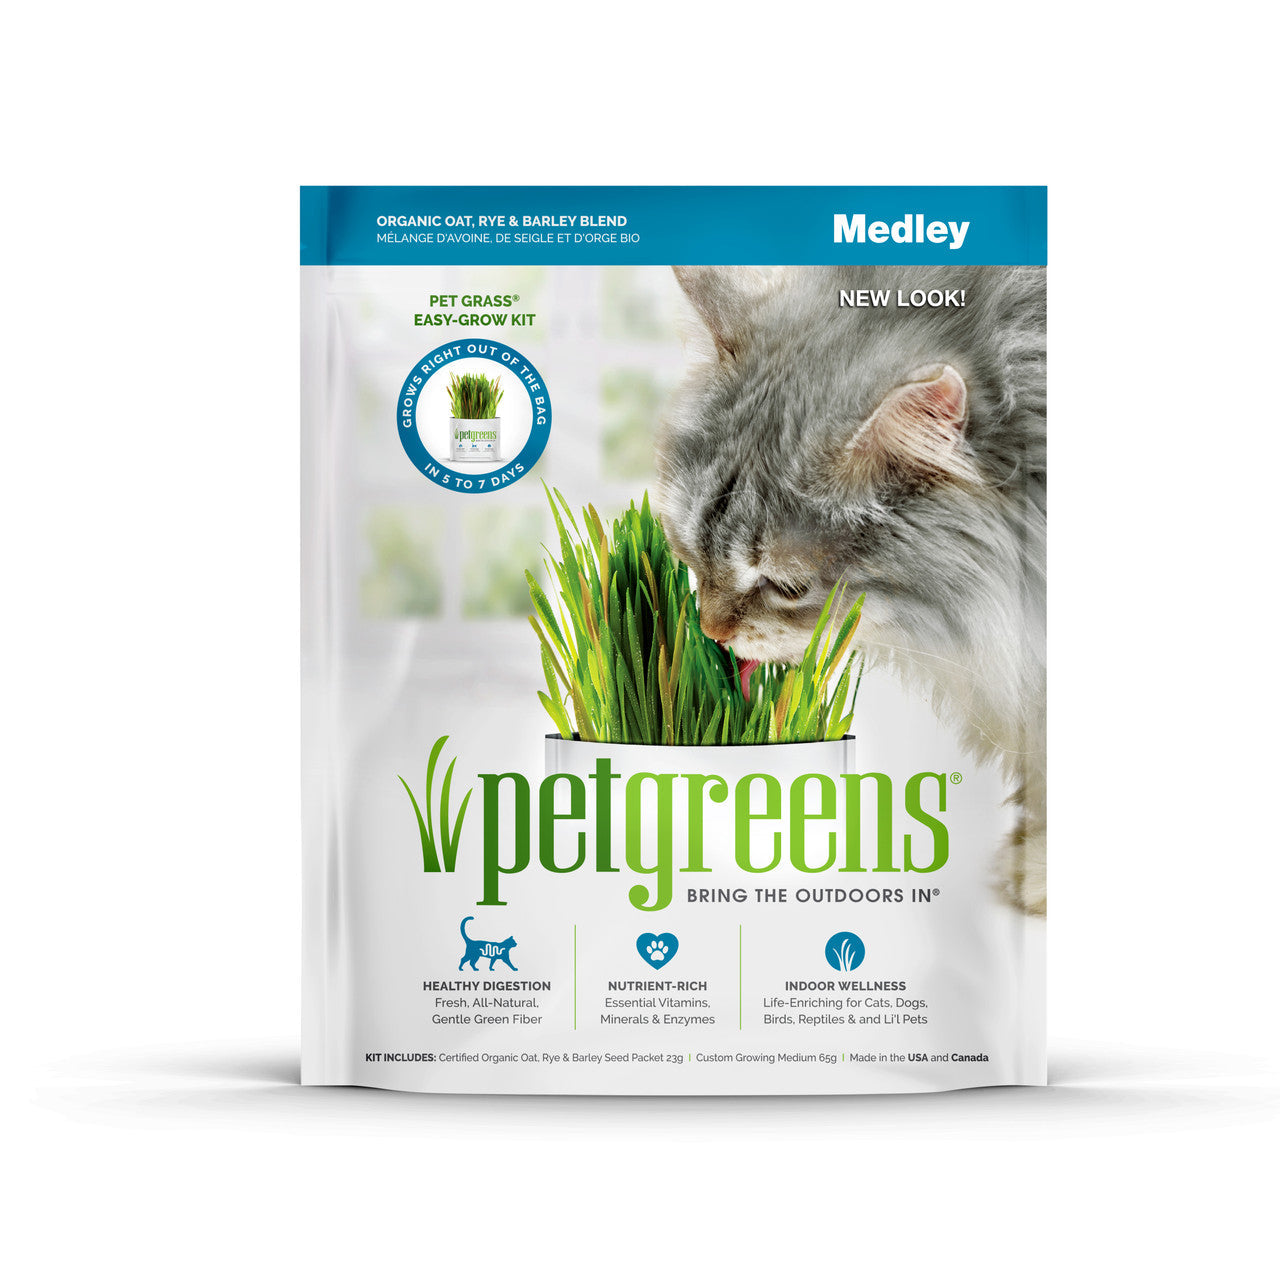 Pet Greens Medley Pet Grass Self-Grow Kit Organic Oat, Rye, & Barley Blend 3oz (D)